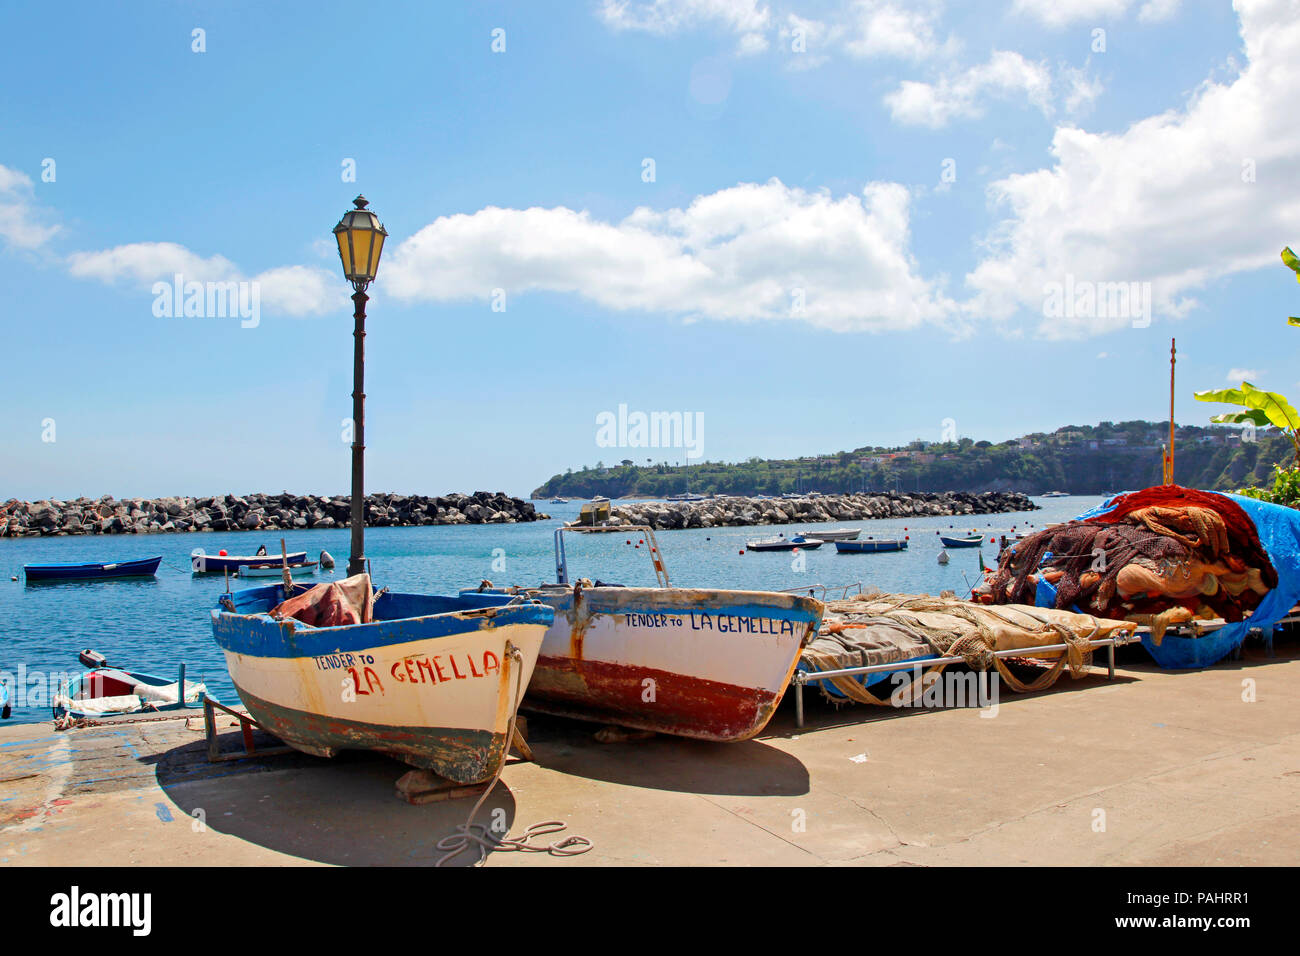 PROCIDA MAY 2013 - Small wooden boats moored at the marina. Marina Corricella, Procida Island, May 11, 2013 Bay of Naples, Campania, Italy Stock Photo